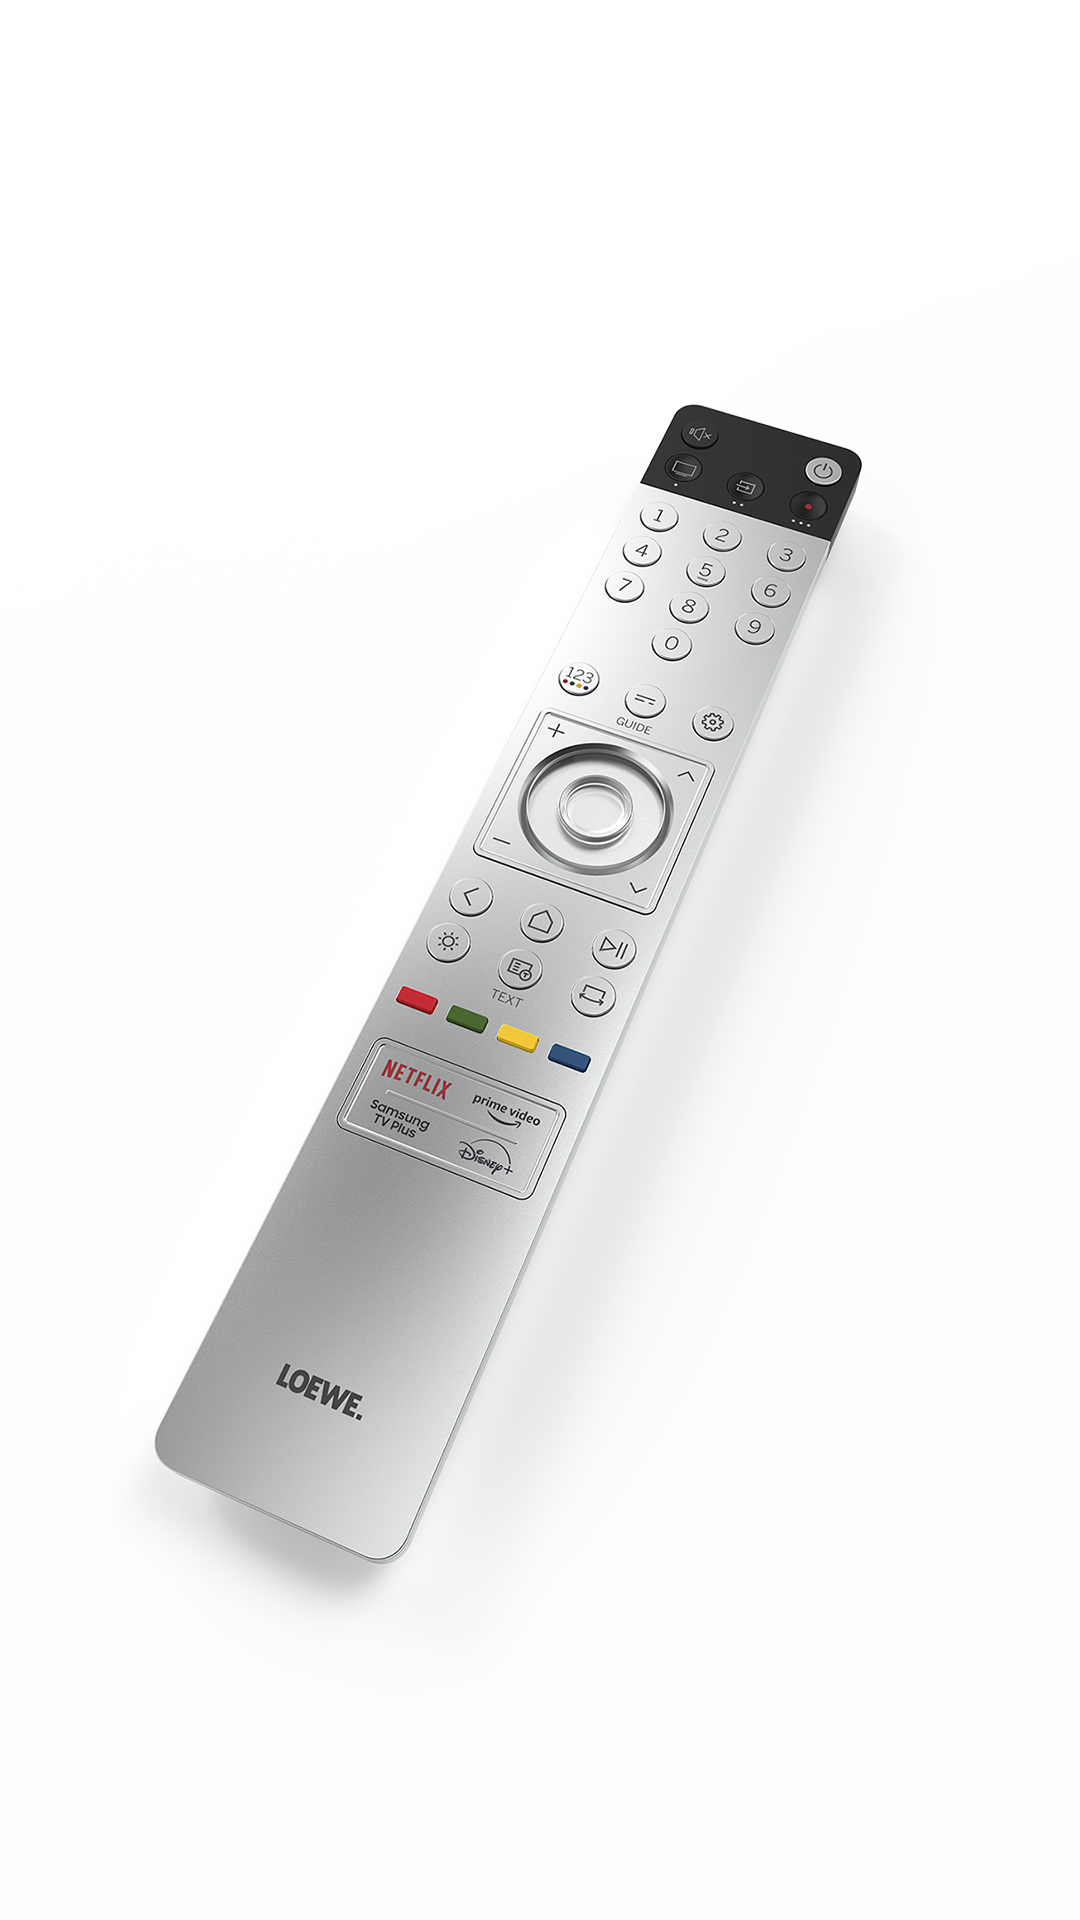 Loewe remote control